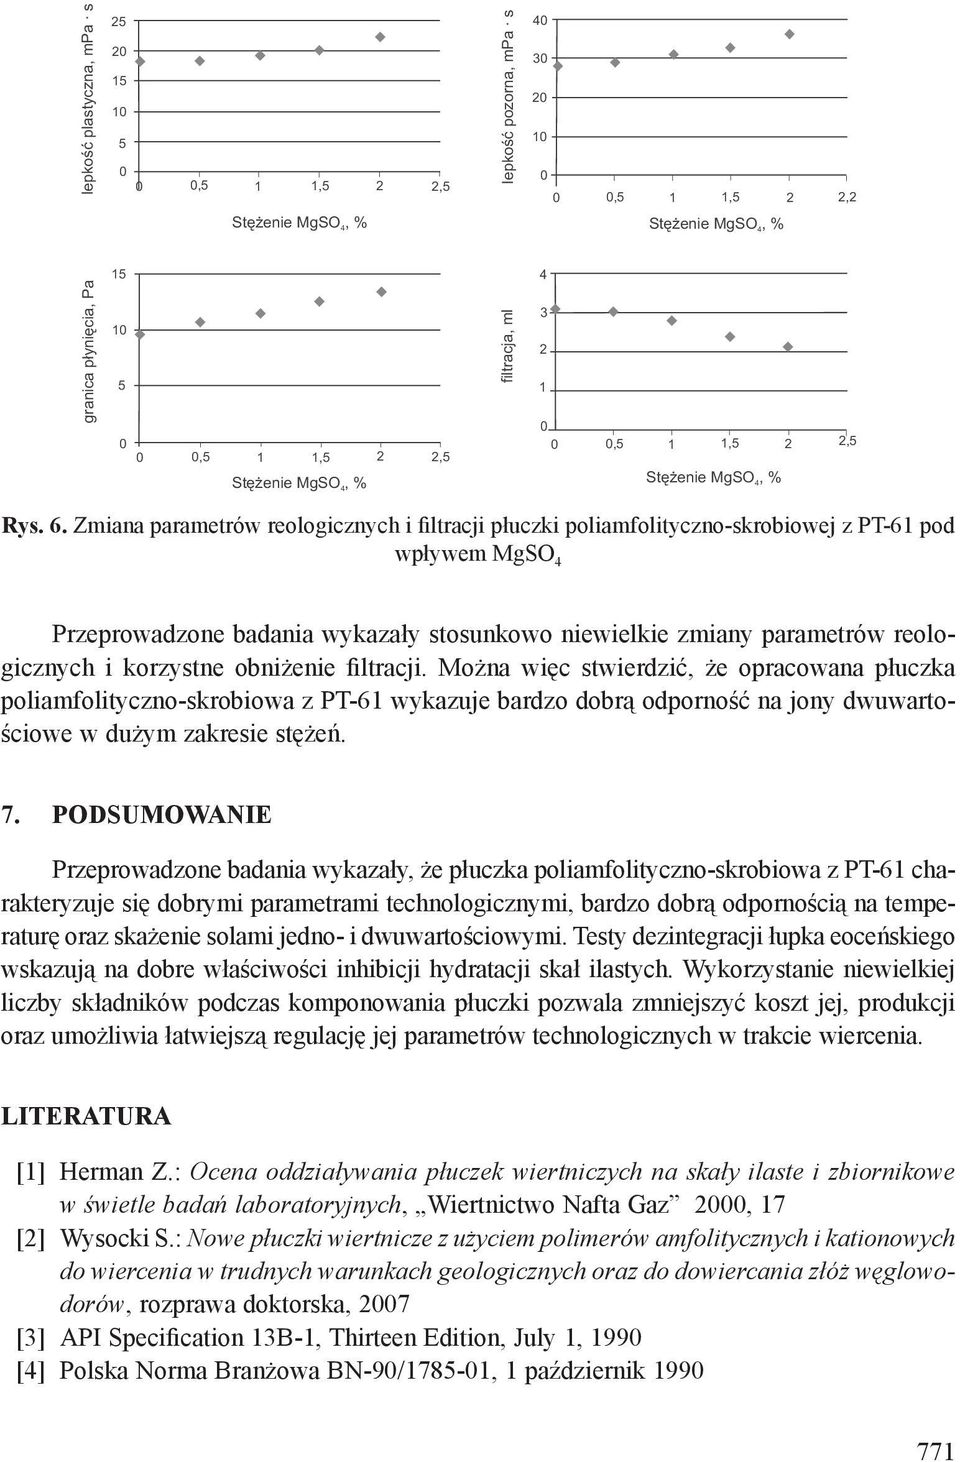 korzystne obniżenie filtracji. Można więc stwierdzić, że opracowana płuczka poliamfolityczno-skrobiowa z PT-61 wykazuje bardzo dobrą odporność na jony dwuwartościowe w dużym zakresie stężeń. 7.